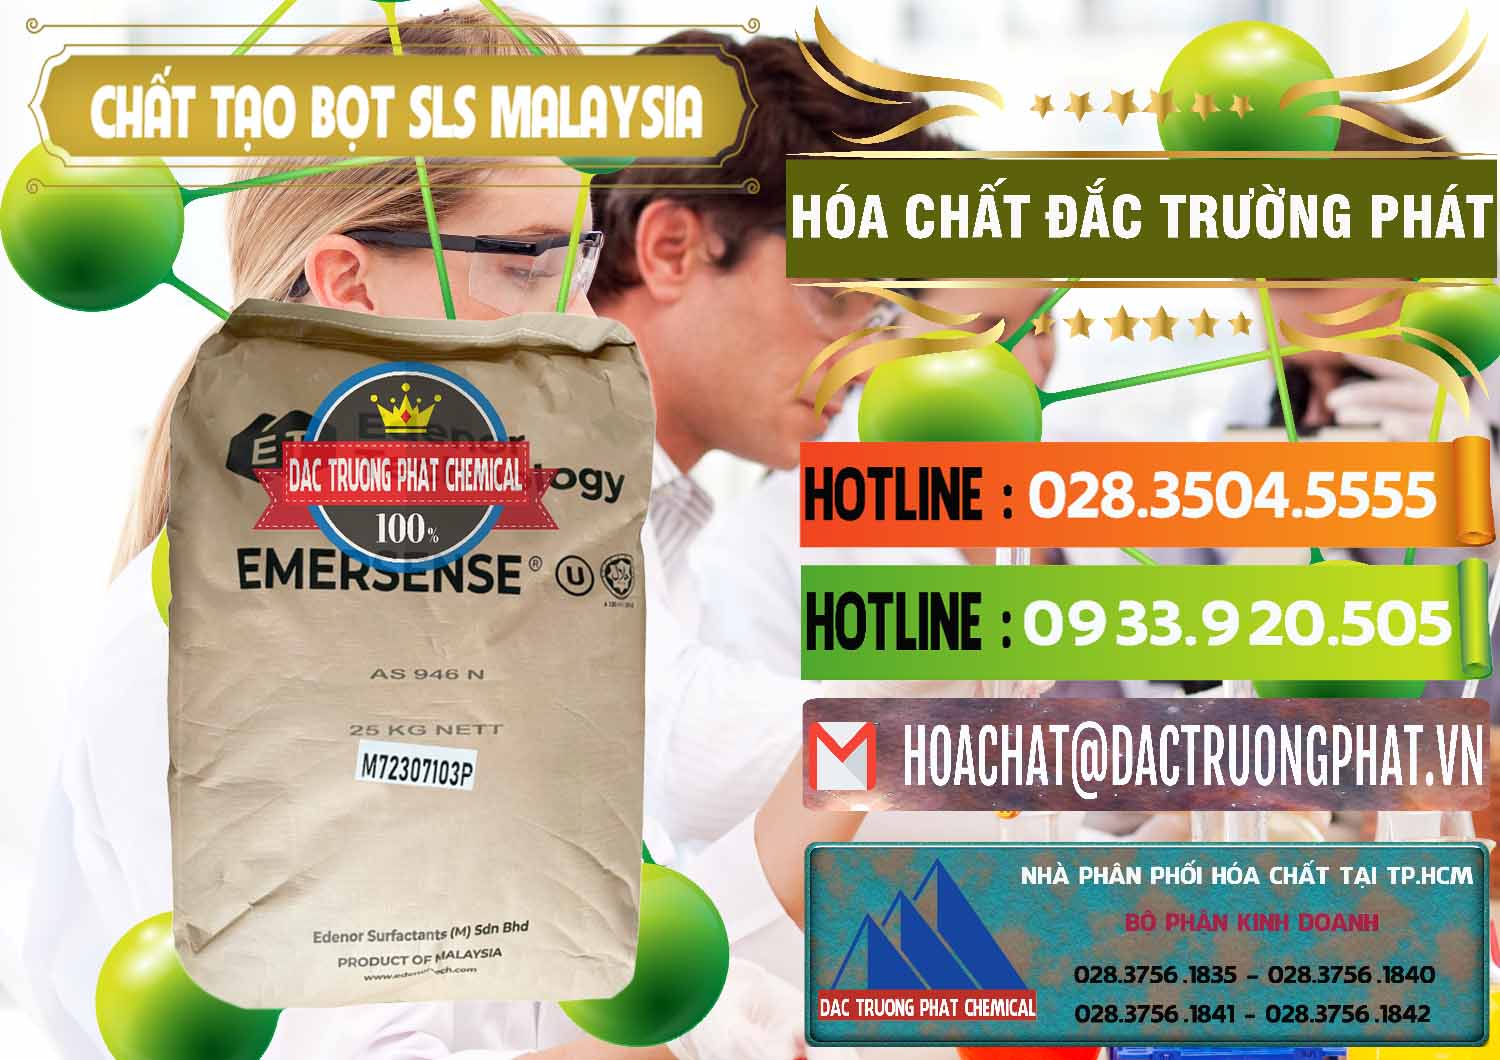 Công ty cung cấp ( bán ) Chất Tạo Bọt SLS Emersense Mã Lai Malaysia - 0381 - Phân phối ( cung cấp ) hóa chất tại TP.HCM - cungcaphoachat.com.vn